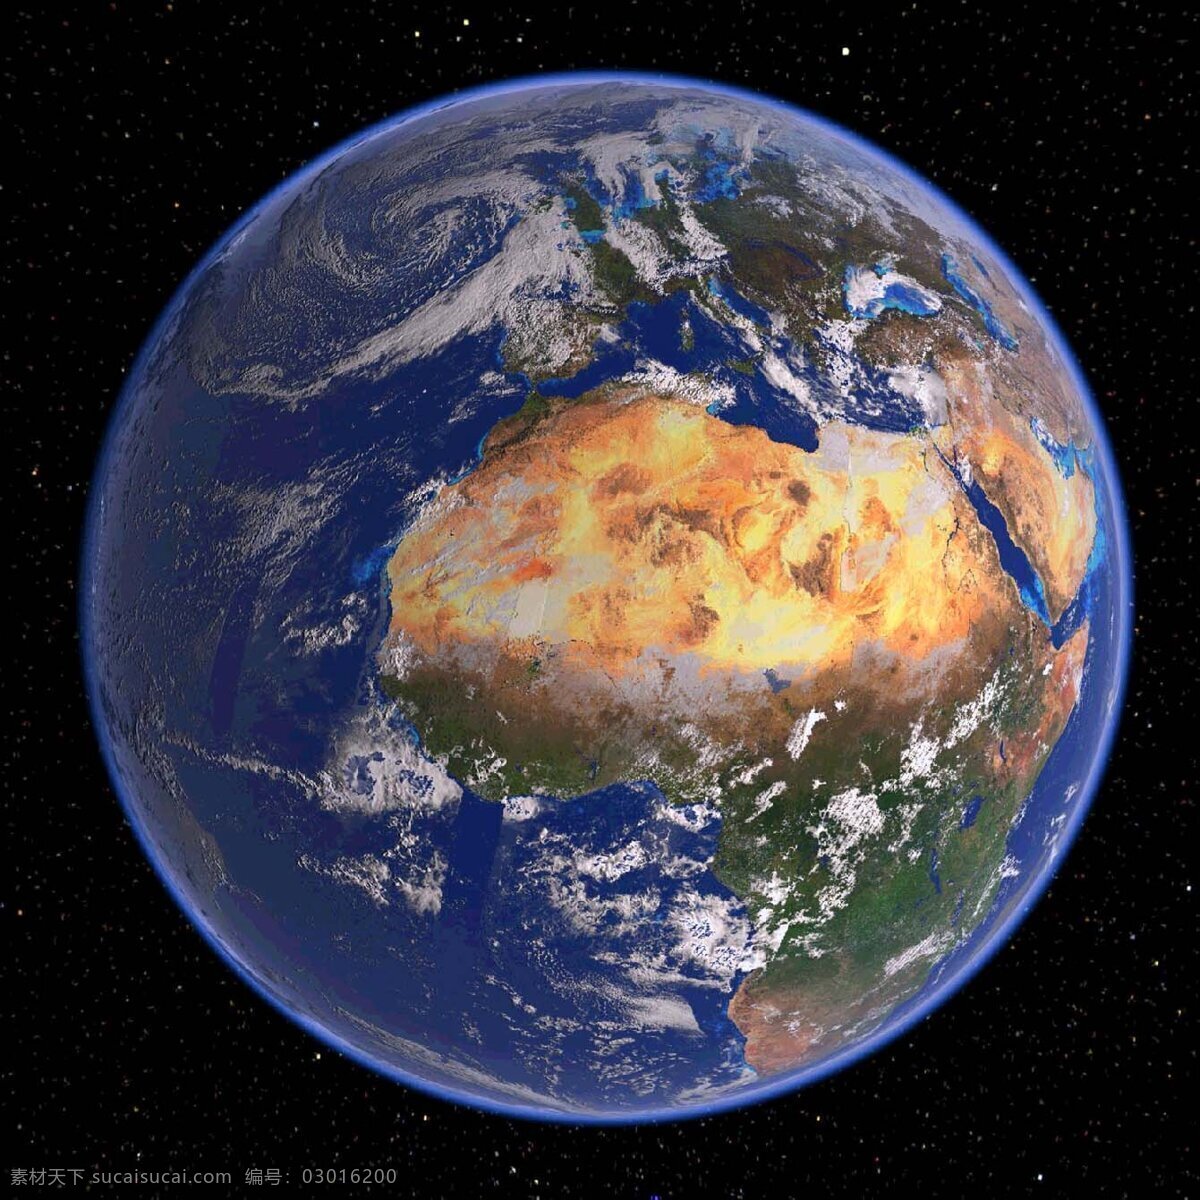 地球全貌 美图 宇宙看地球 地球轮廓 整体地球